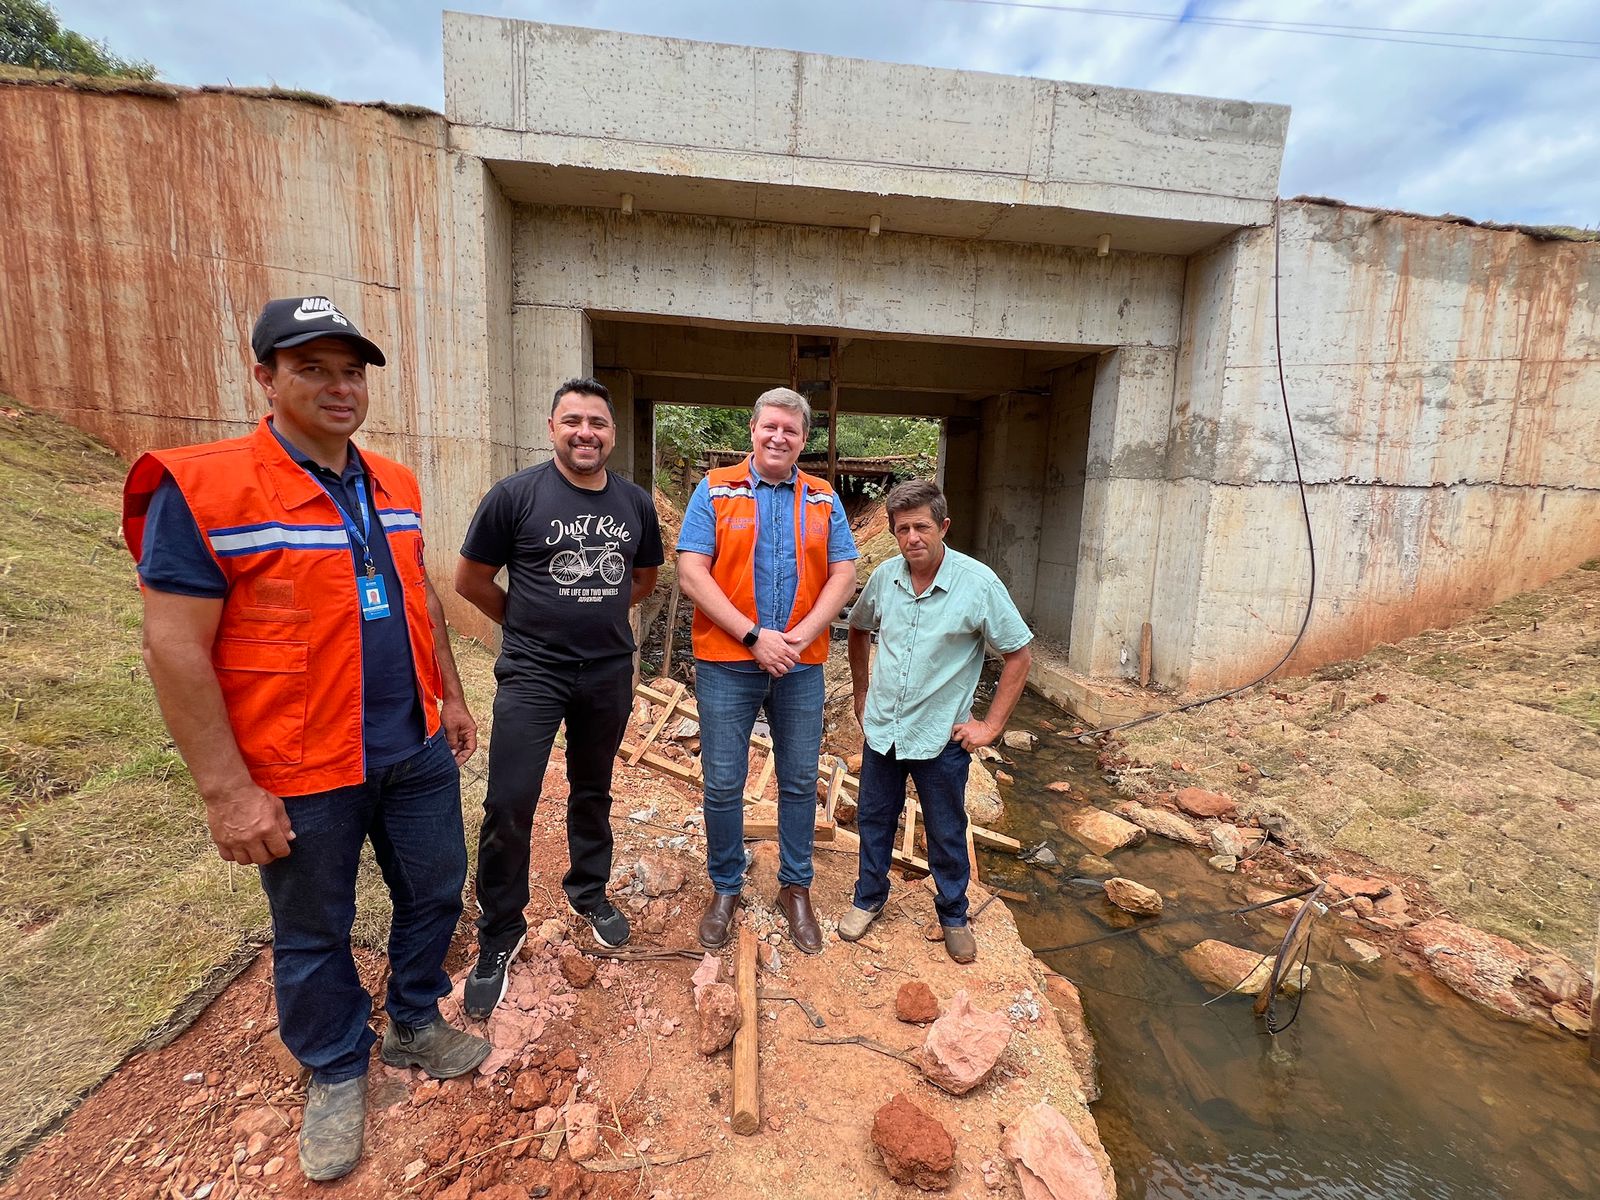 Prefeito de Itararé (SP), Heliton do Valle, realiza visita técnica às obras de construção da nova ponte no distrito de Santa Cruz dos Lopes